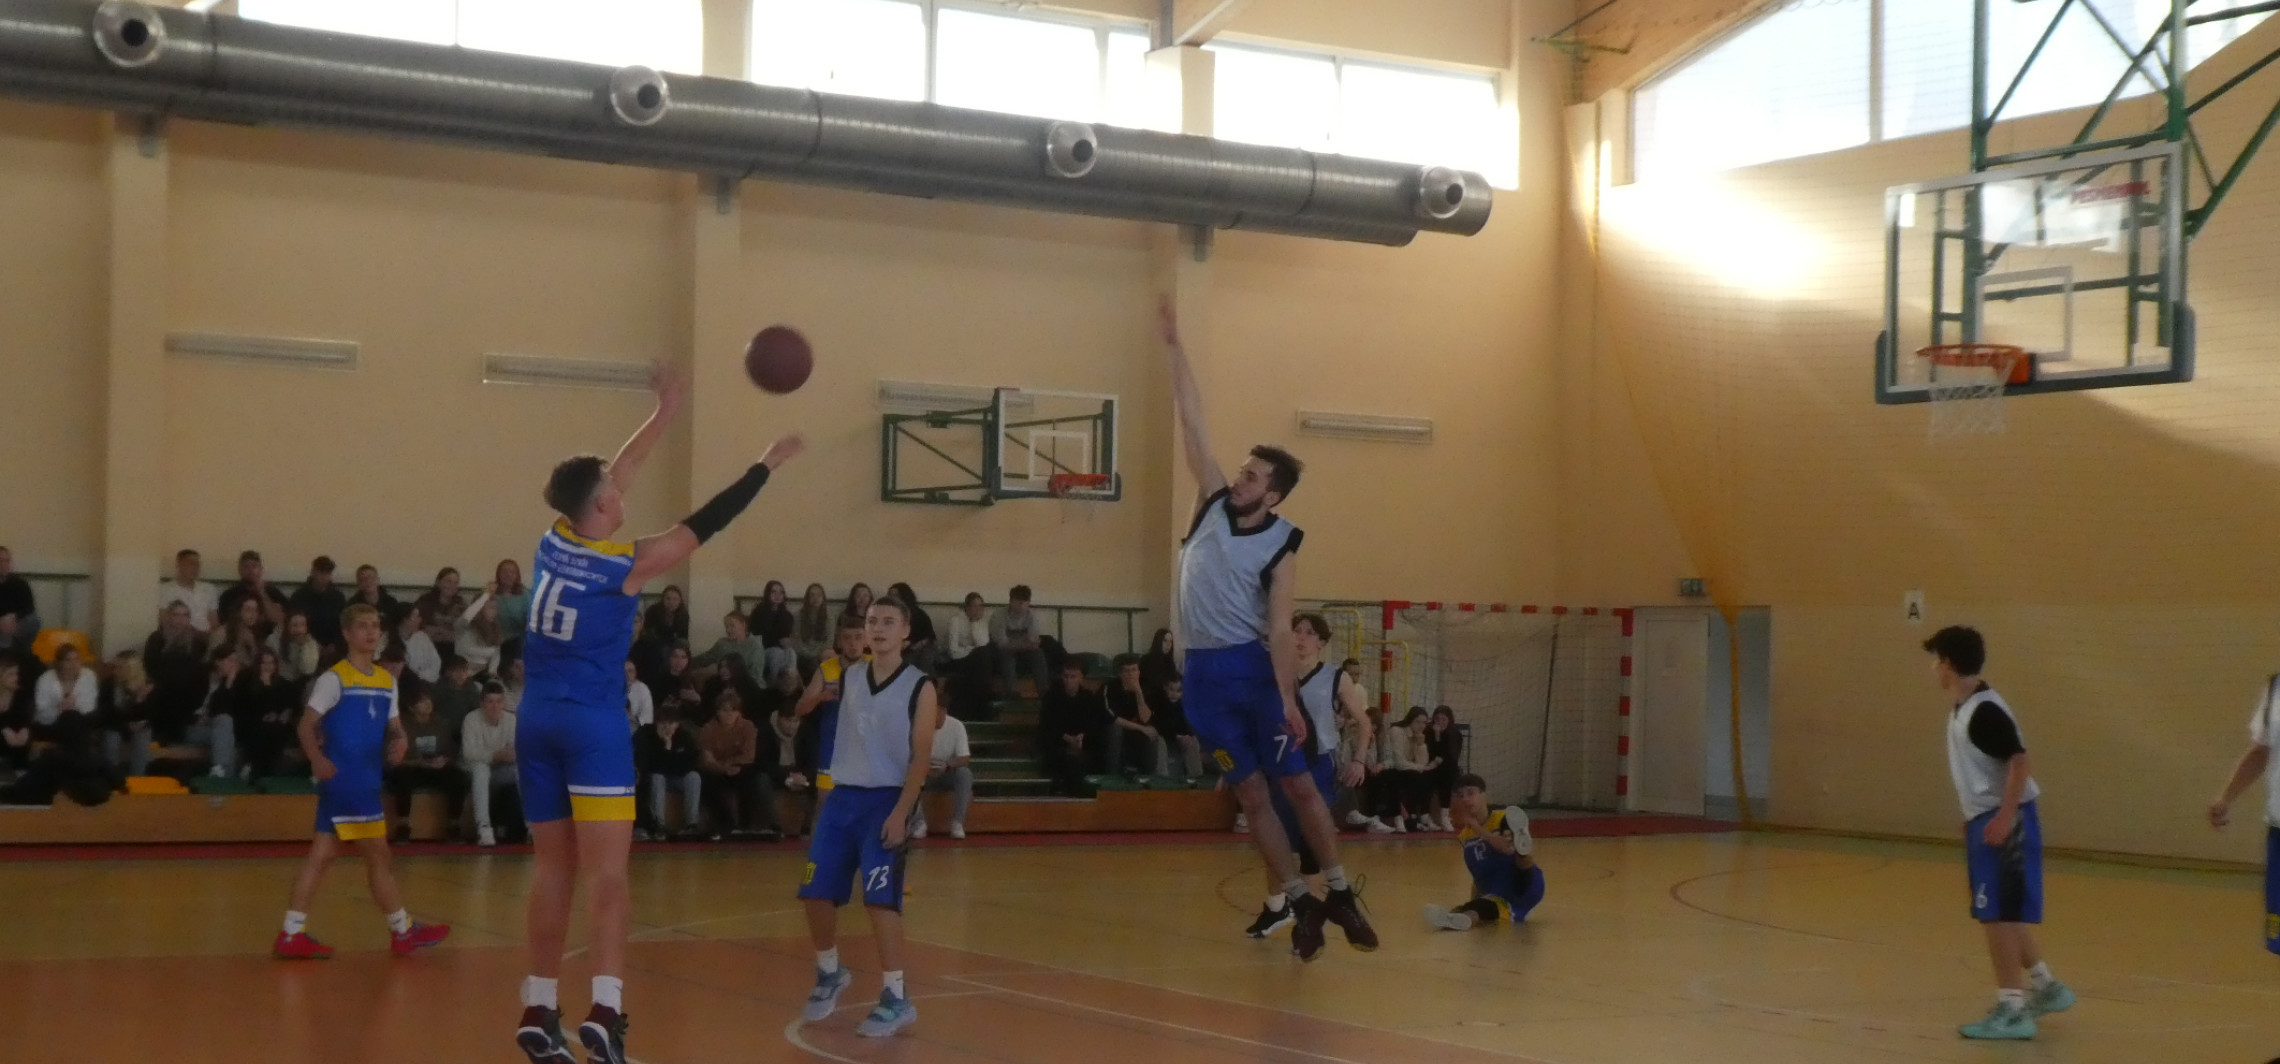 Inowrocław - Ruszyła międzyszkolna rywalizacja w koszykówce